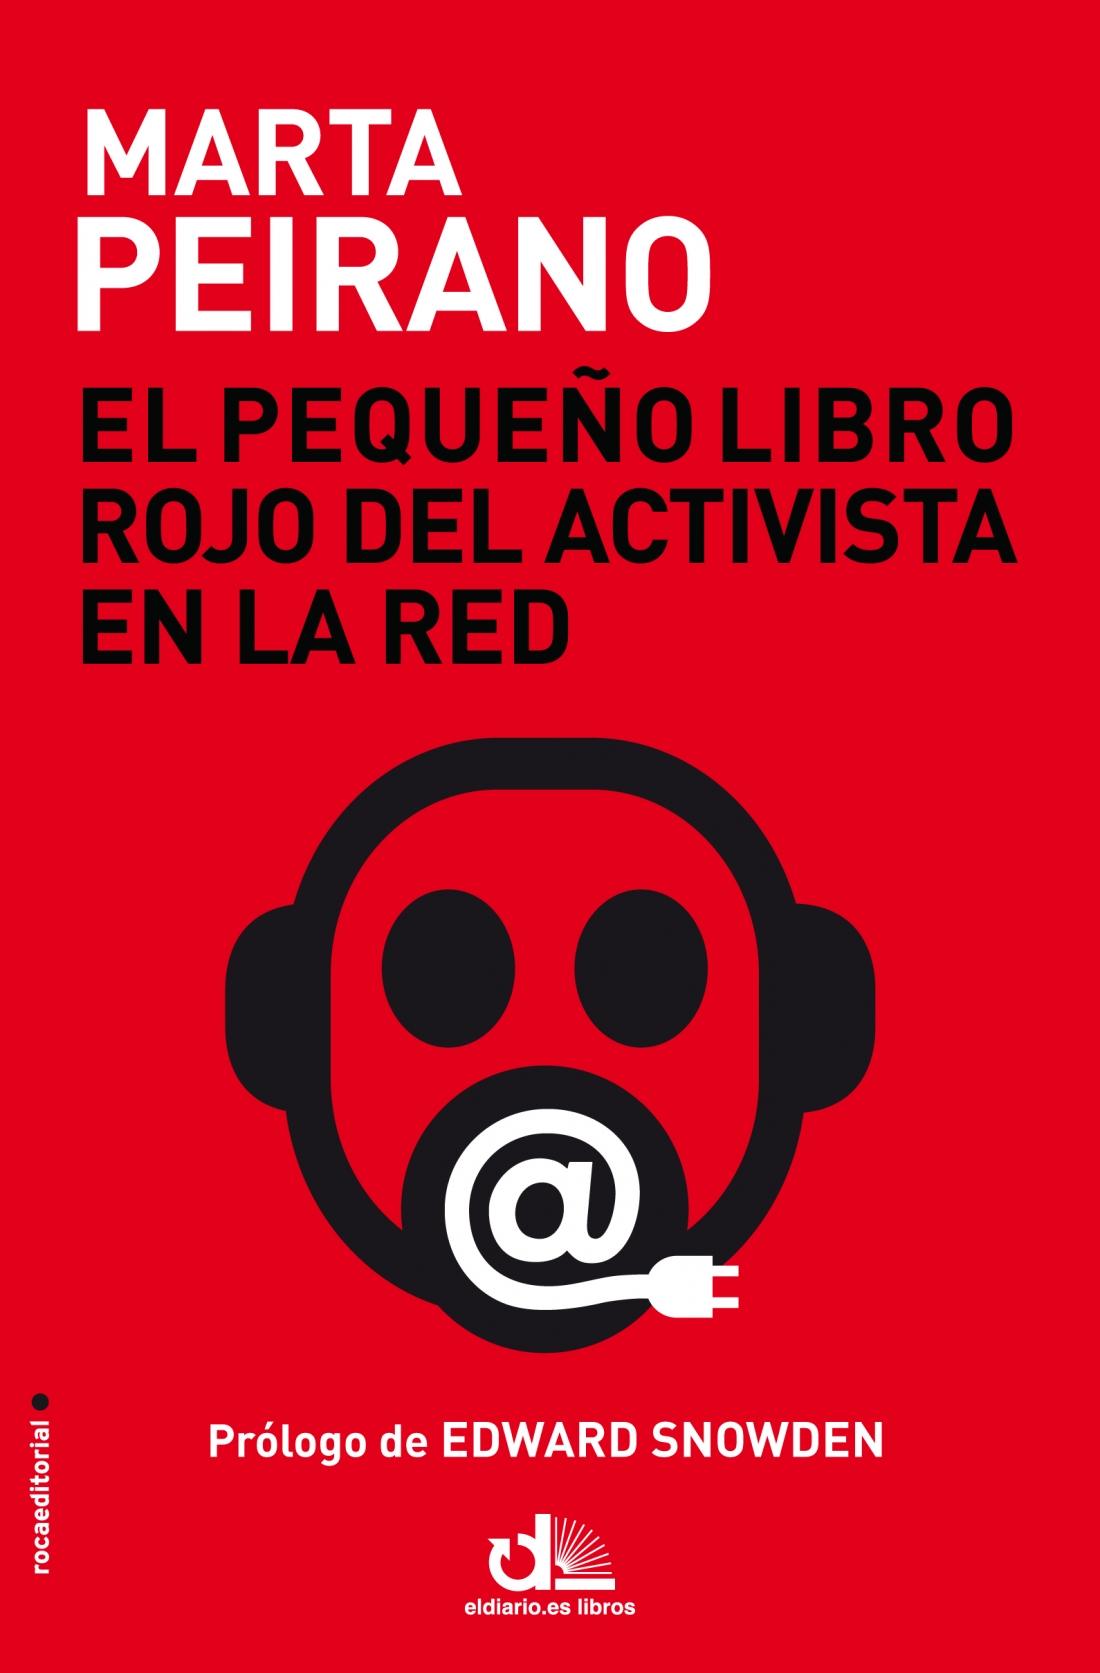 Audiolibro El Pequeño Libro Rojo del Activista en la Red – Marta Peirano